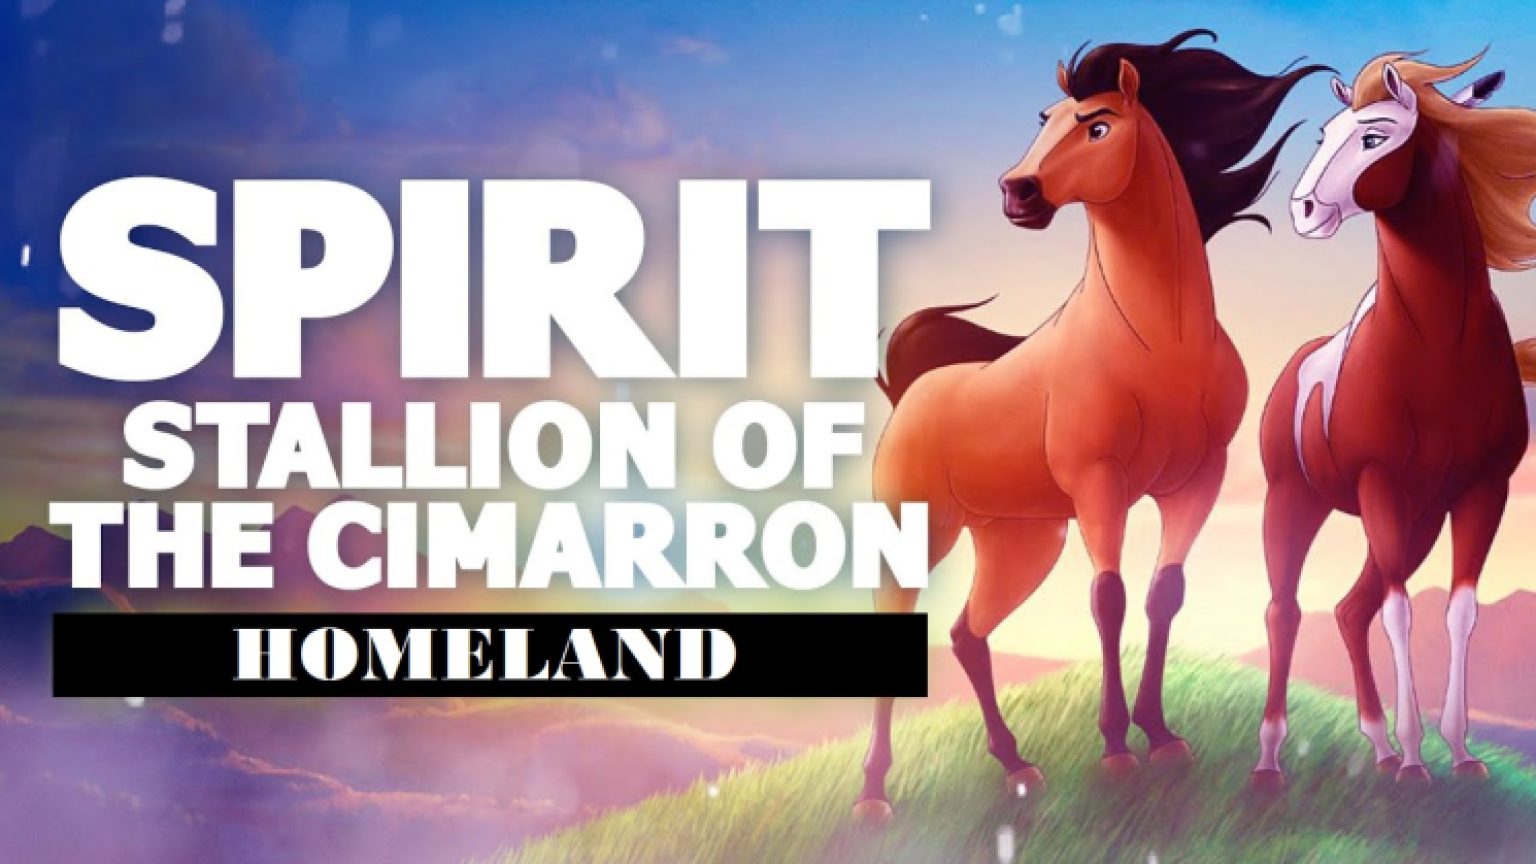 Homeland Spirit Stallion Of The Cimarron Opening By Hans Zimmer